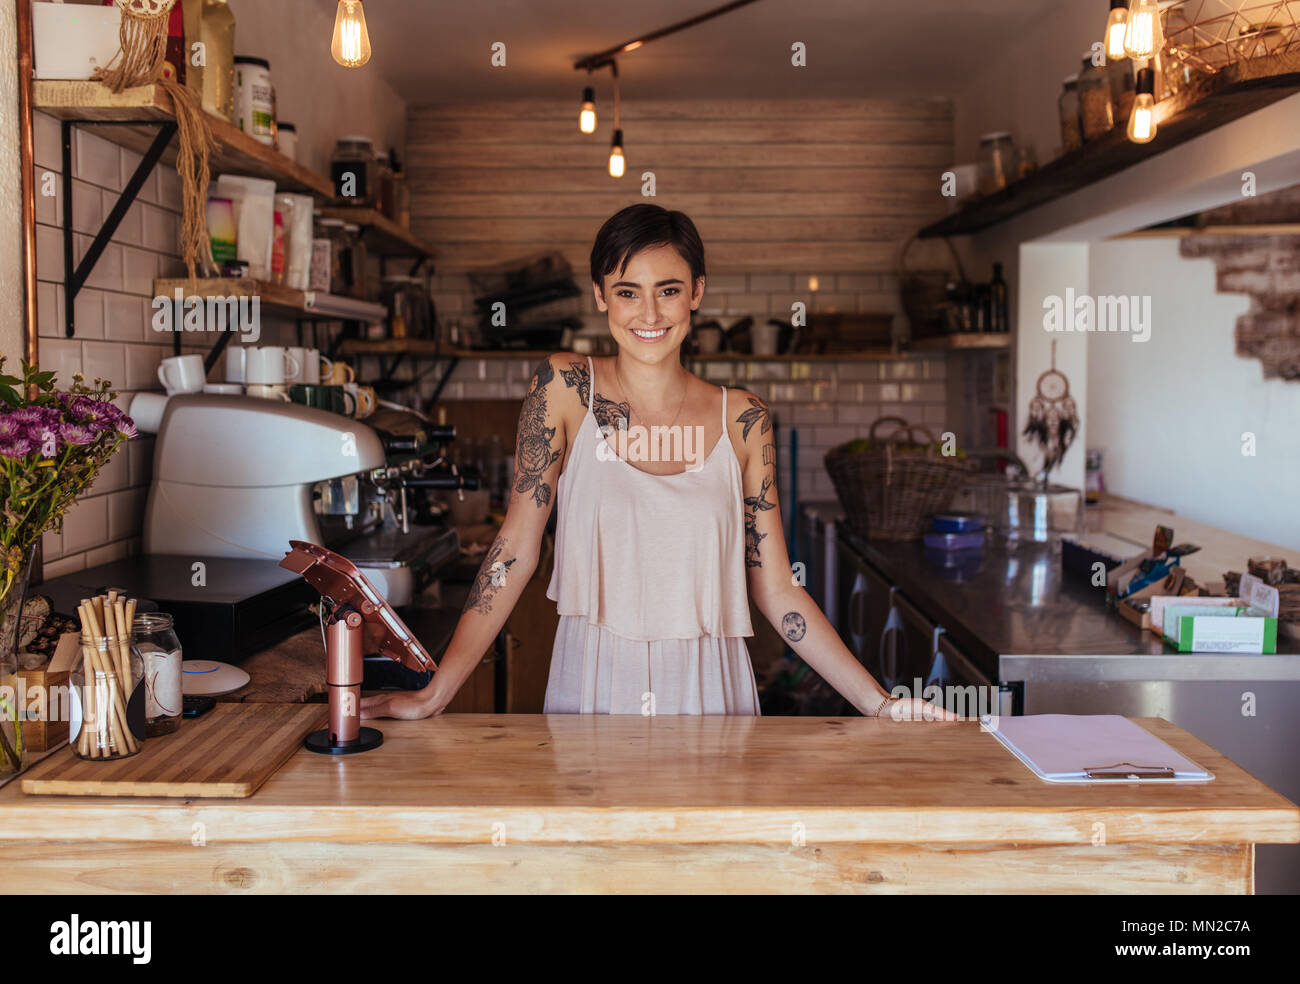 Frau, die auf der Abrechnung Zähler Ihrer cafe posieren. Lächelnd Restaurant Besitzer und stand neben der Abrechnung. Stockfoto